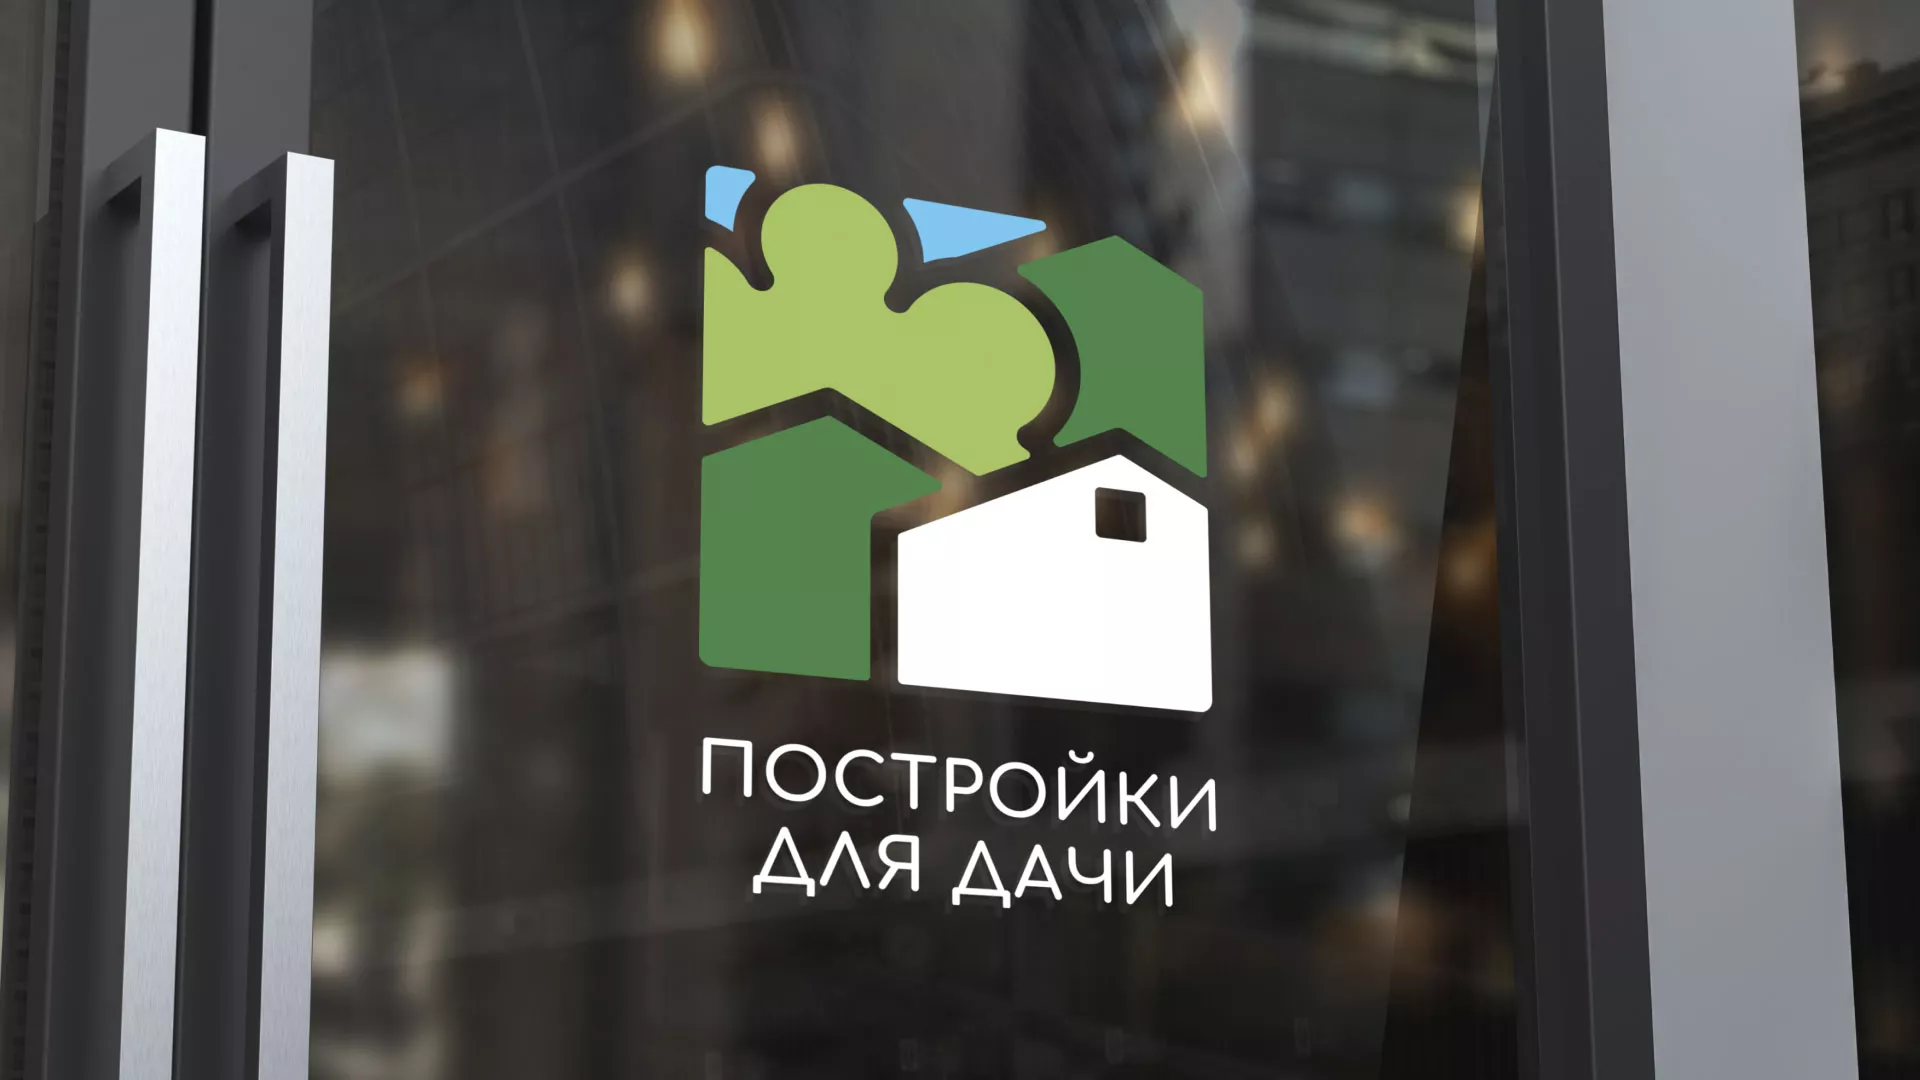 Разработка логотипа в Павловске для компании «Постройки для дачи»